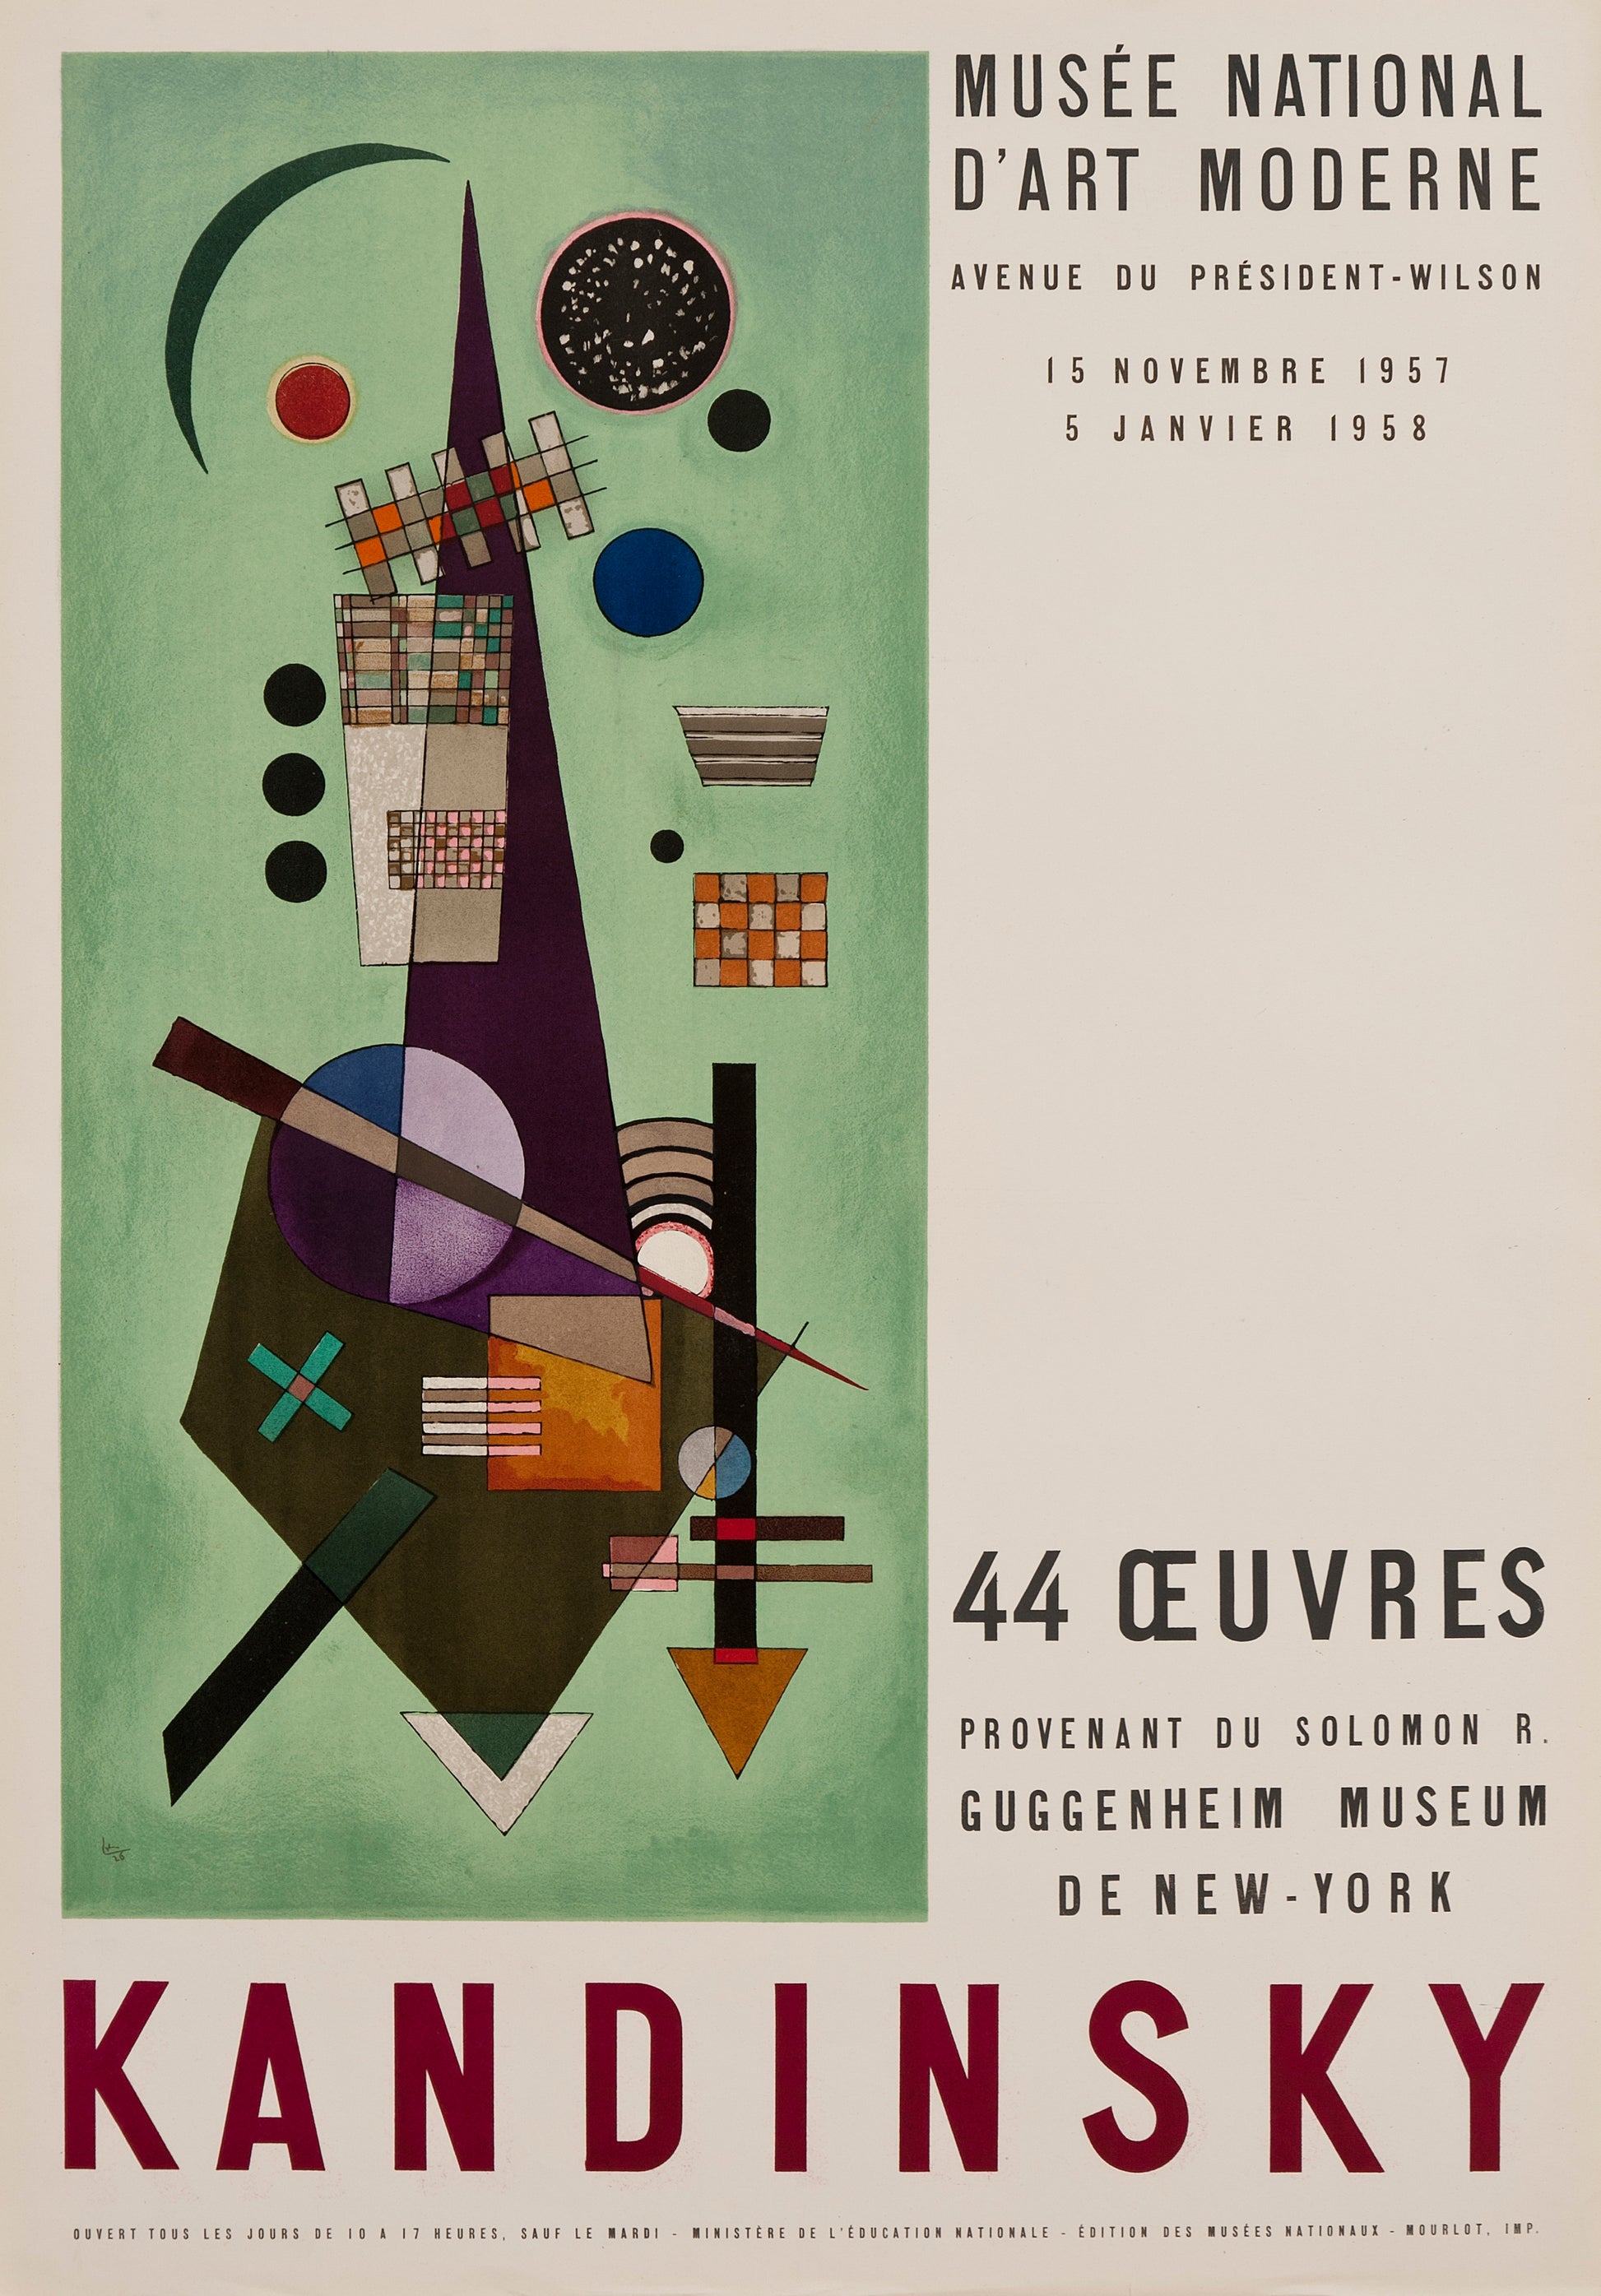 Musée National d'Art Moderne (after) Wassily Kandinsky, 1957 - Mourlot Editions - Fine_Art - Poster - Lithograph - Wall Art - Vintage - Prints - Original